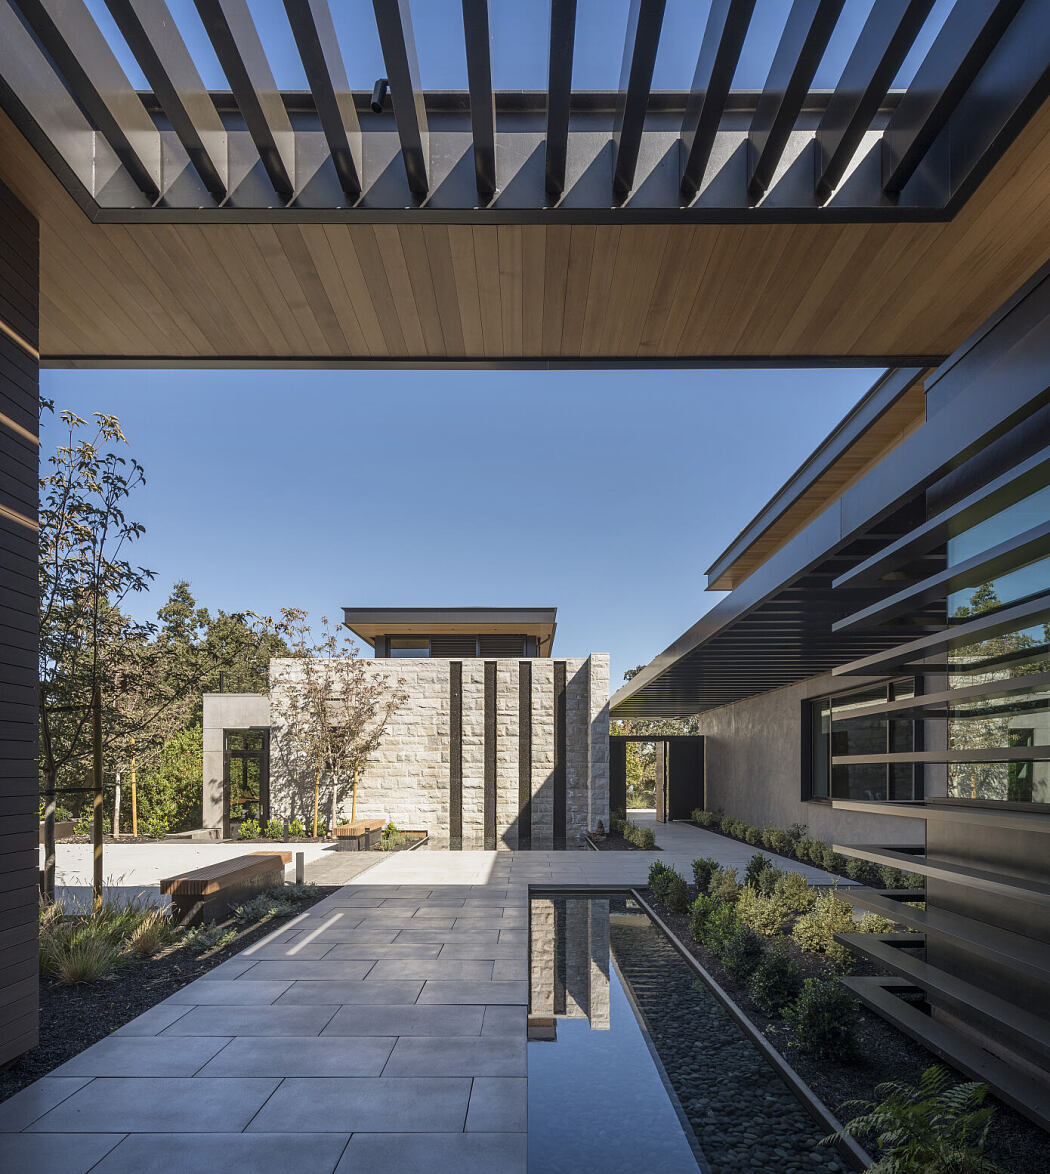 Portola Valley Residence by SB Architects - 8